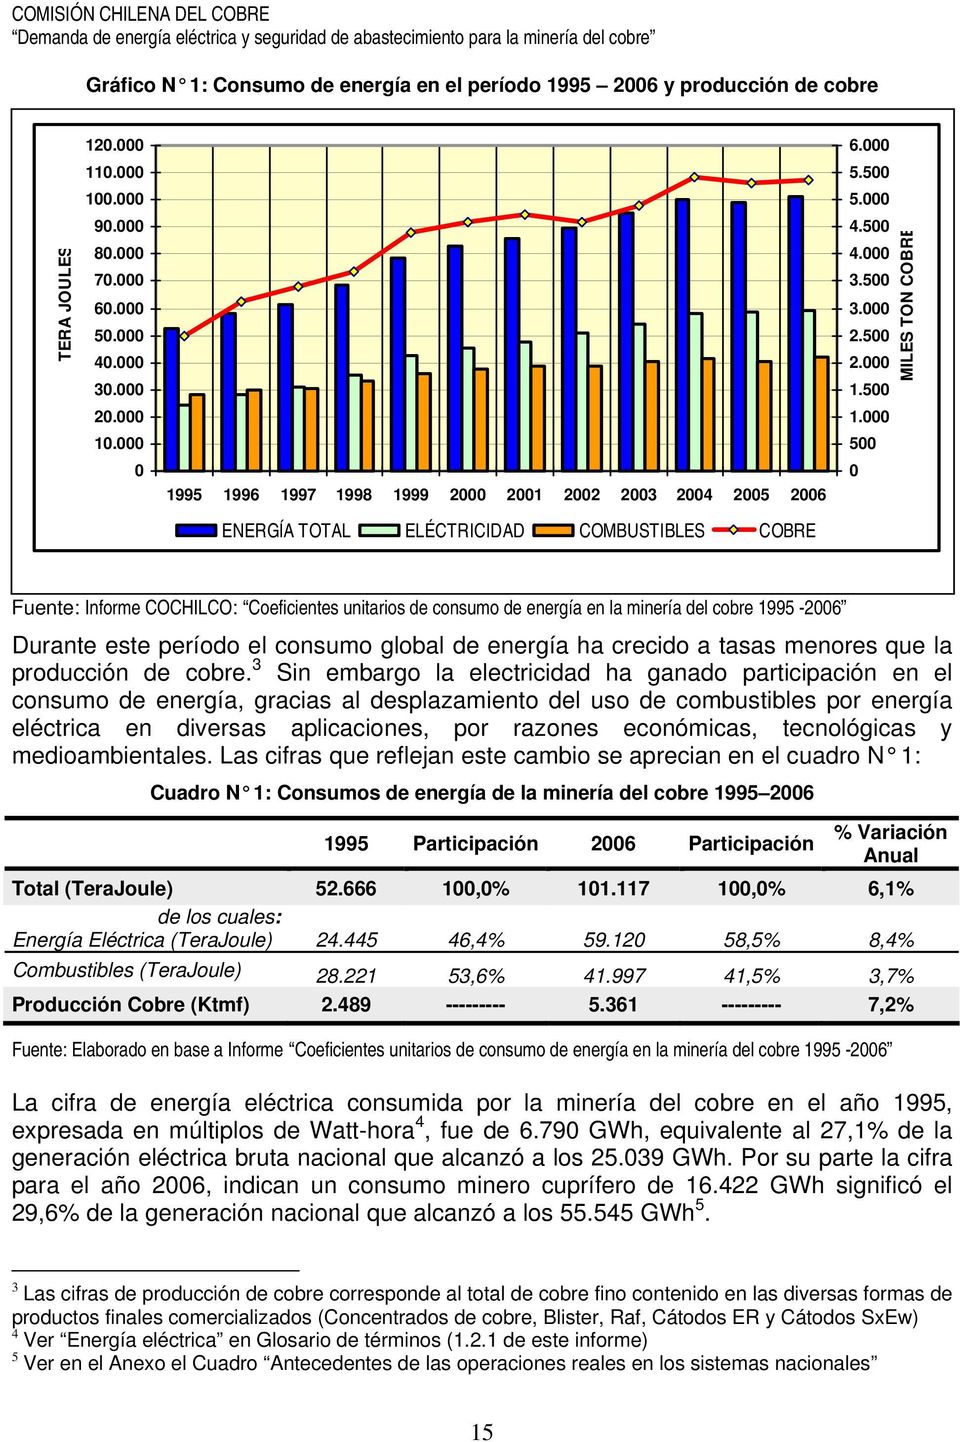 000 500 0 MILES TON COBRE ENERGÍA TOTAL ELÉCTRICIDAD COMBUSTIBLES COBRE Fuente: Informe COCHILCO: Coeficientes unitarios de consumo de energía en la minería del cobre 1995-2006 Durante este período